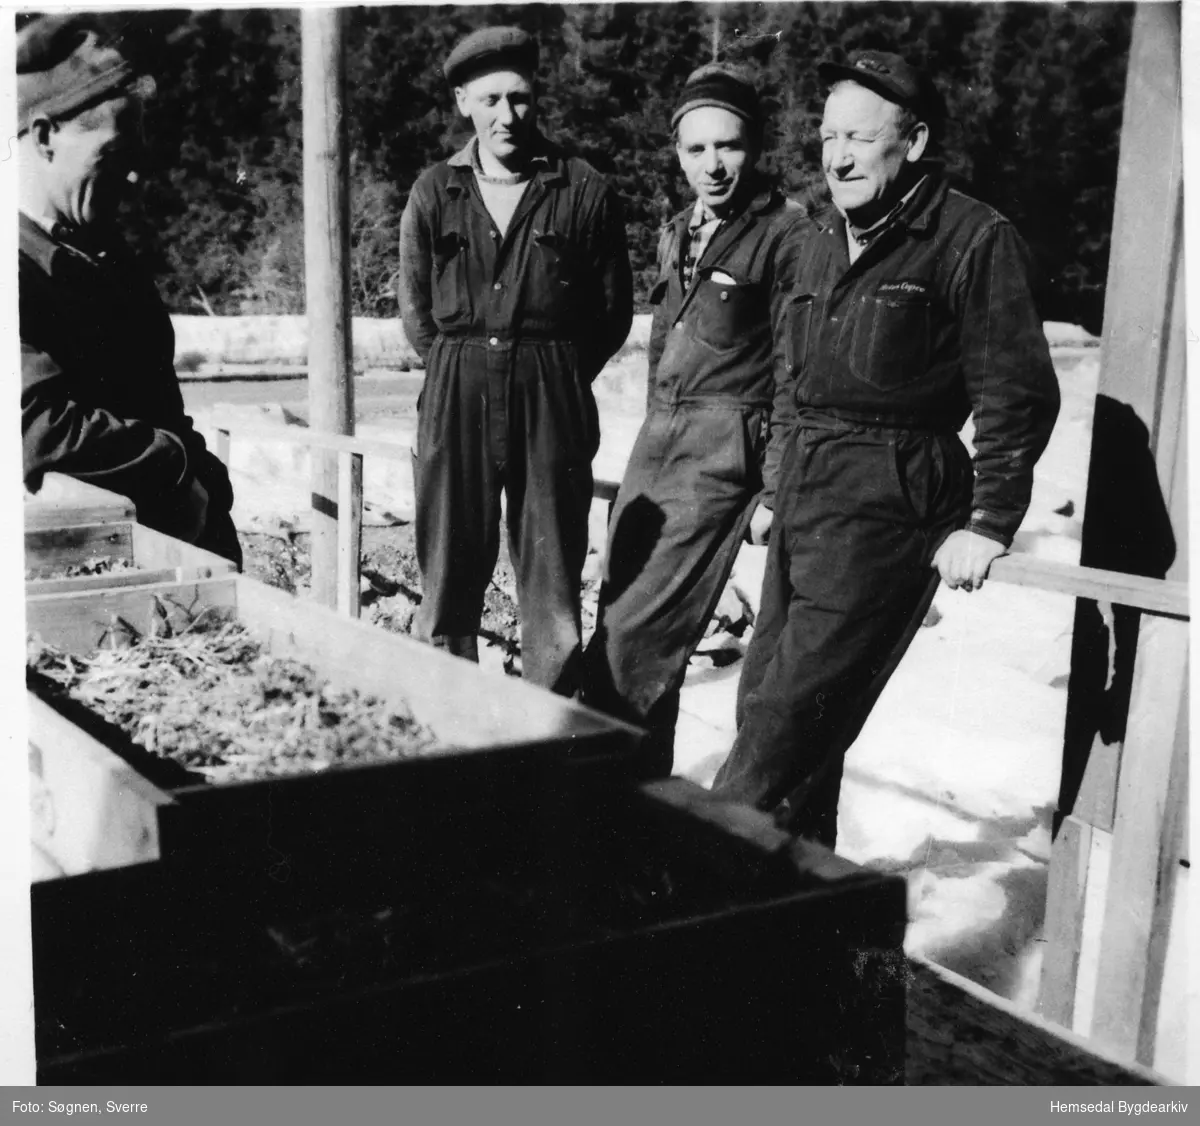 Anleggsarbeidarar på Heimsil 1, Langeset i Hemsedal i 1960.
Frå venstre: Stensvold frå Hol, Ola Nestegard frå Hol, Johan Rusten frå Gol og Ukjend